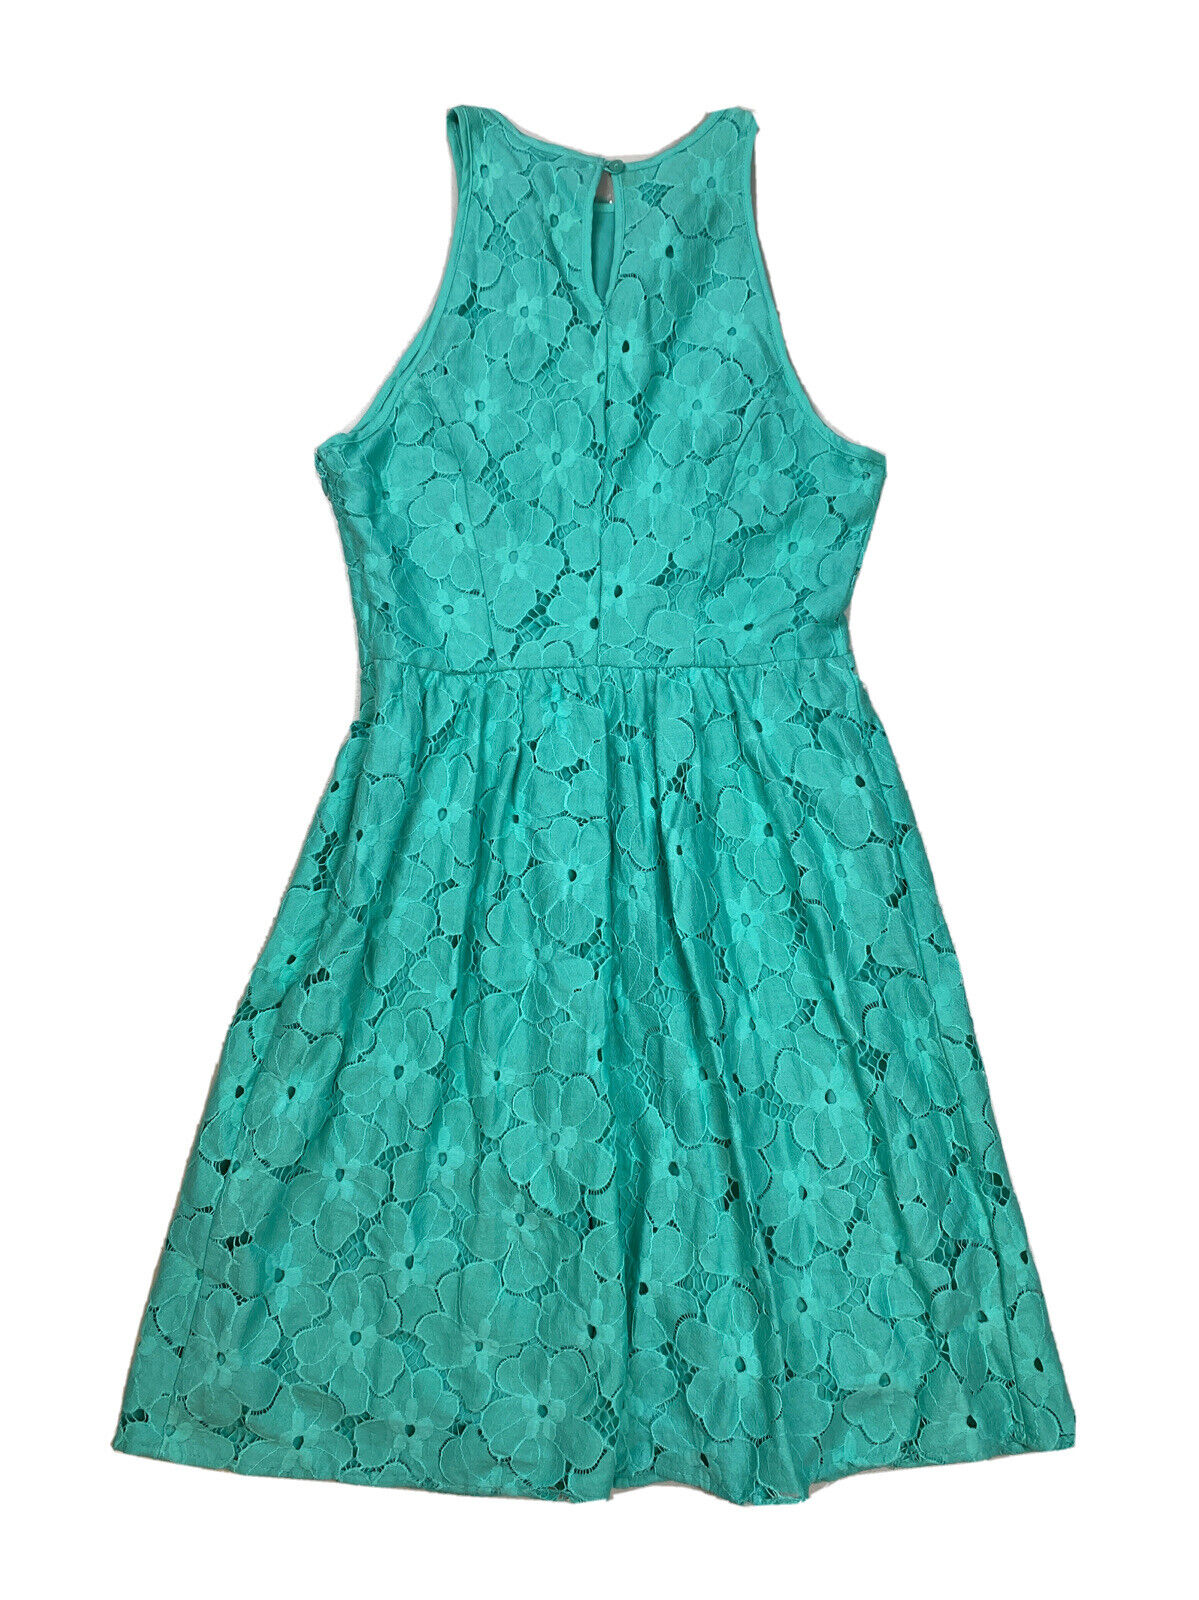 NEW Lauren Conrad Women's Blue Lace Sleeveless A-Line Dress - 2